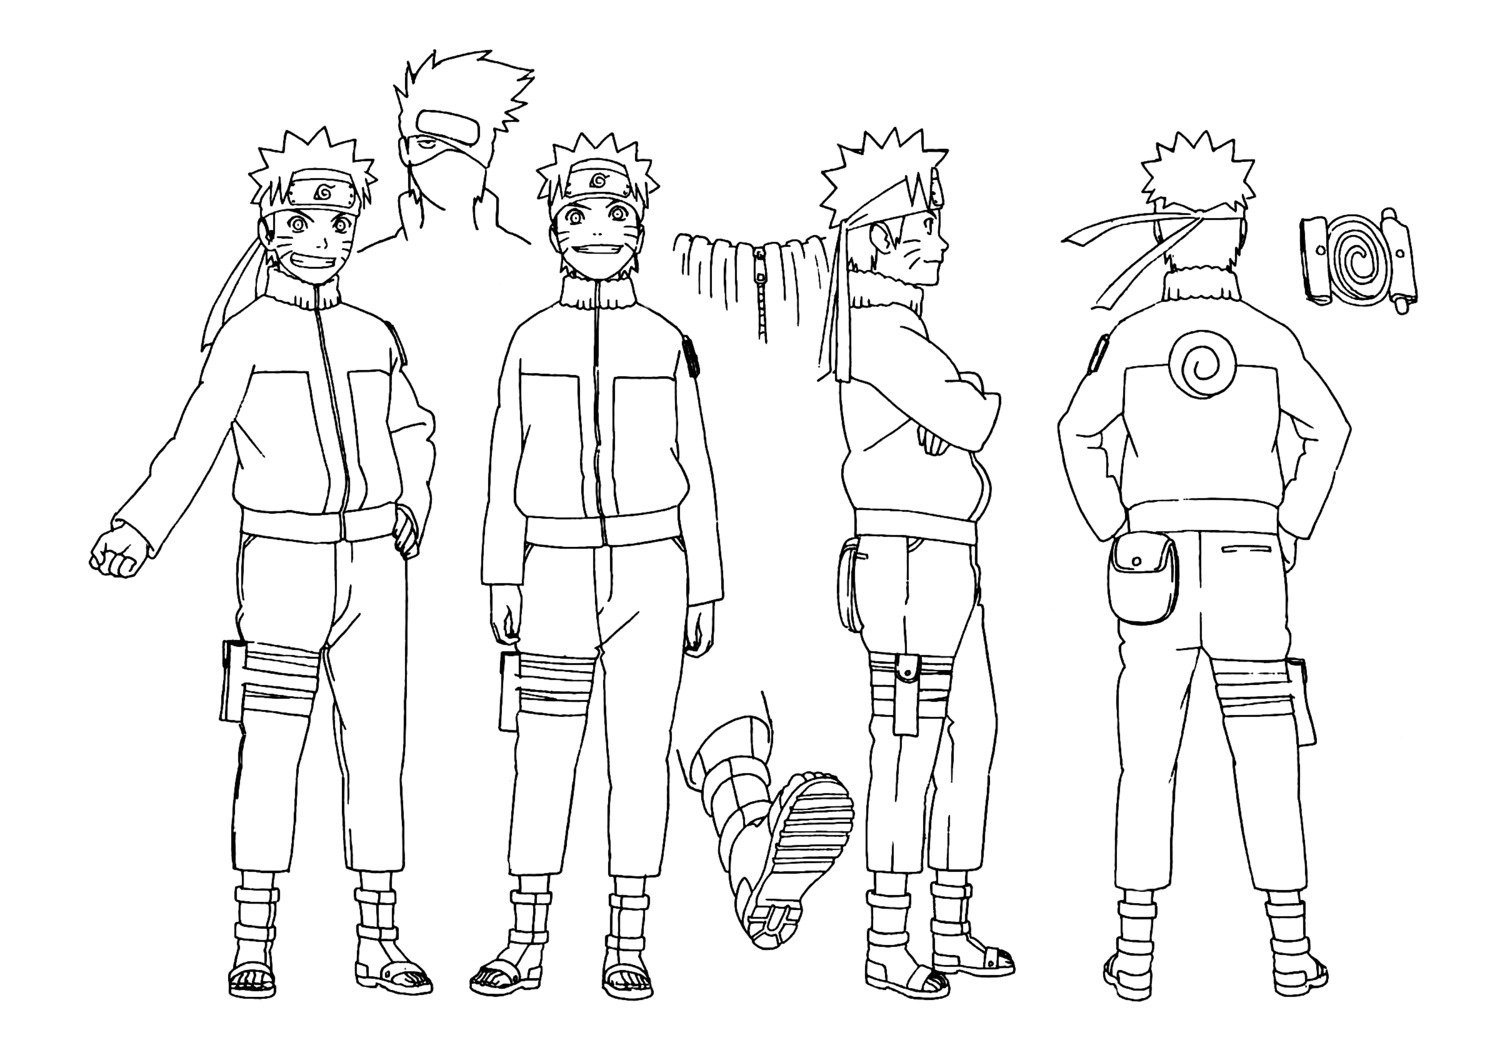 Naruto character sheet